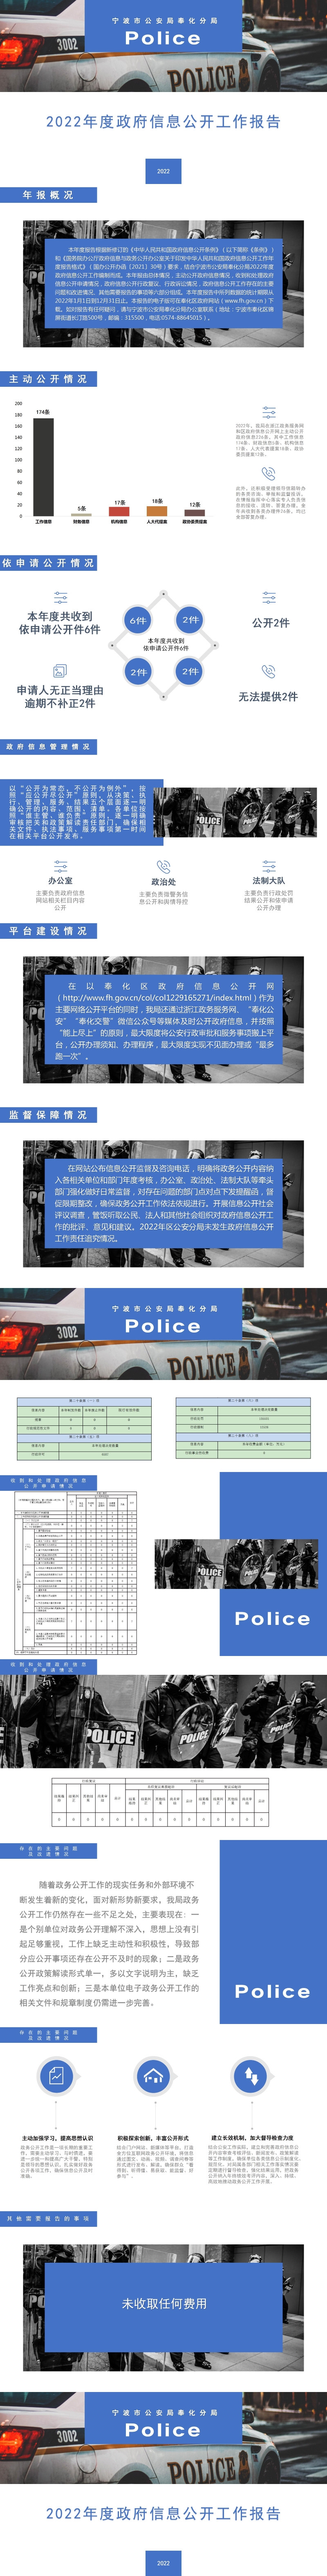 区公安分局2023年度政府信息公开工作报告图解_01.jpg